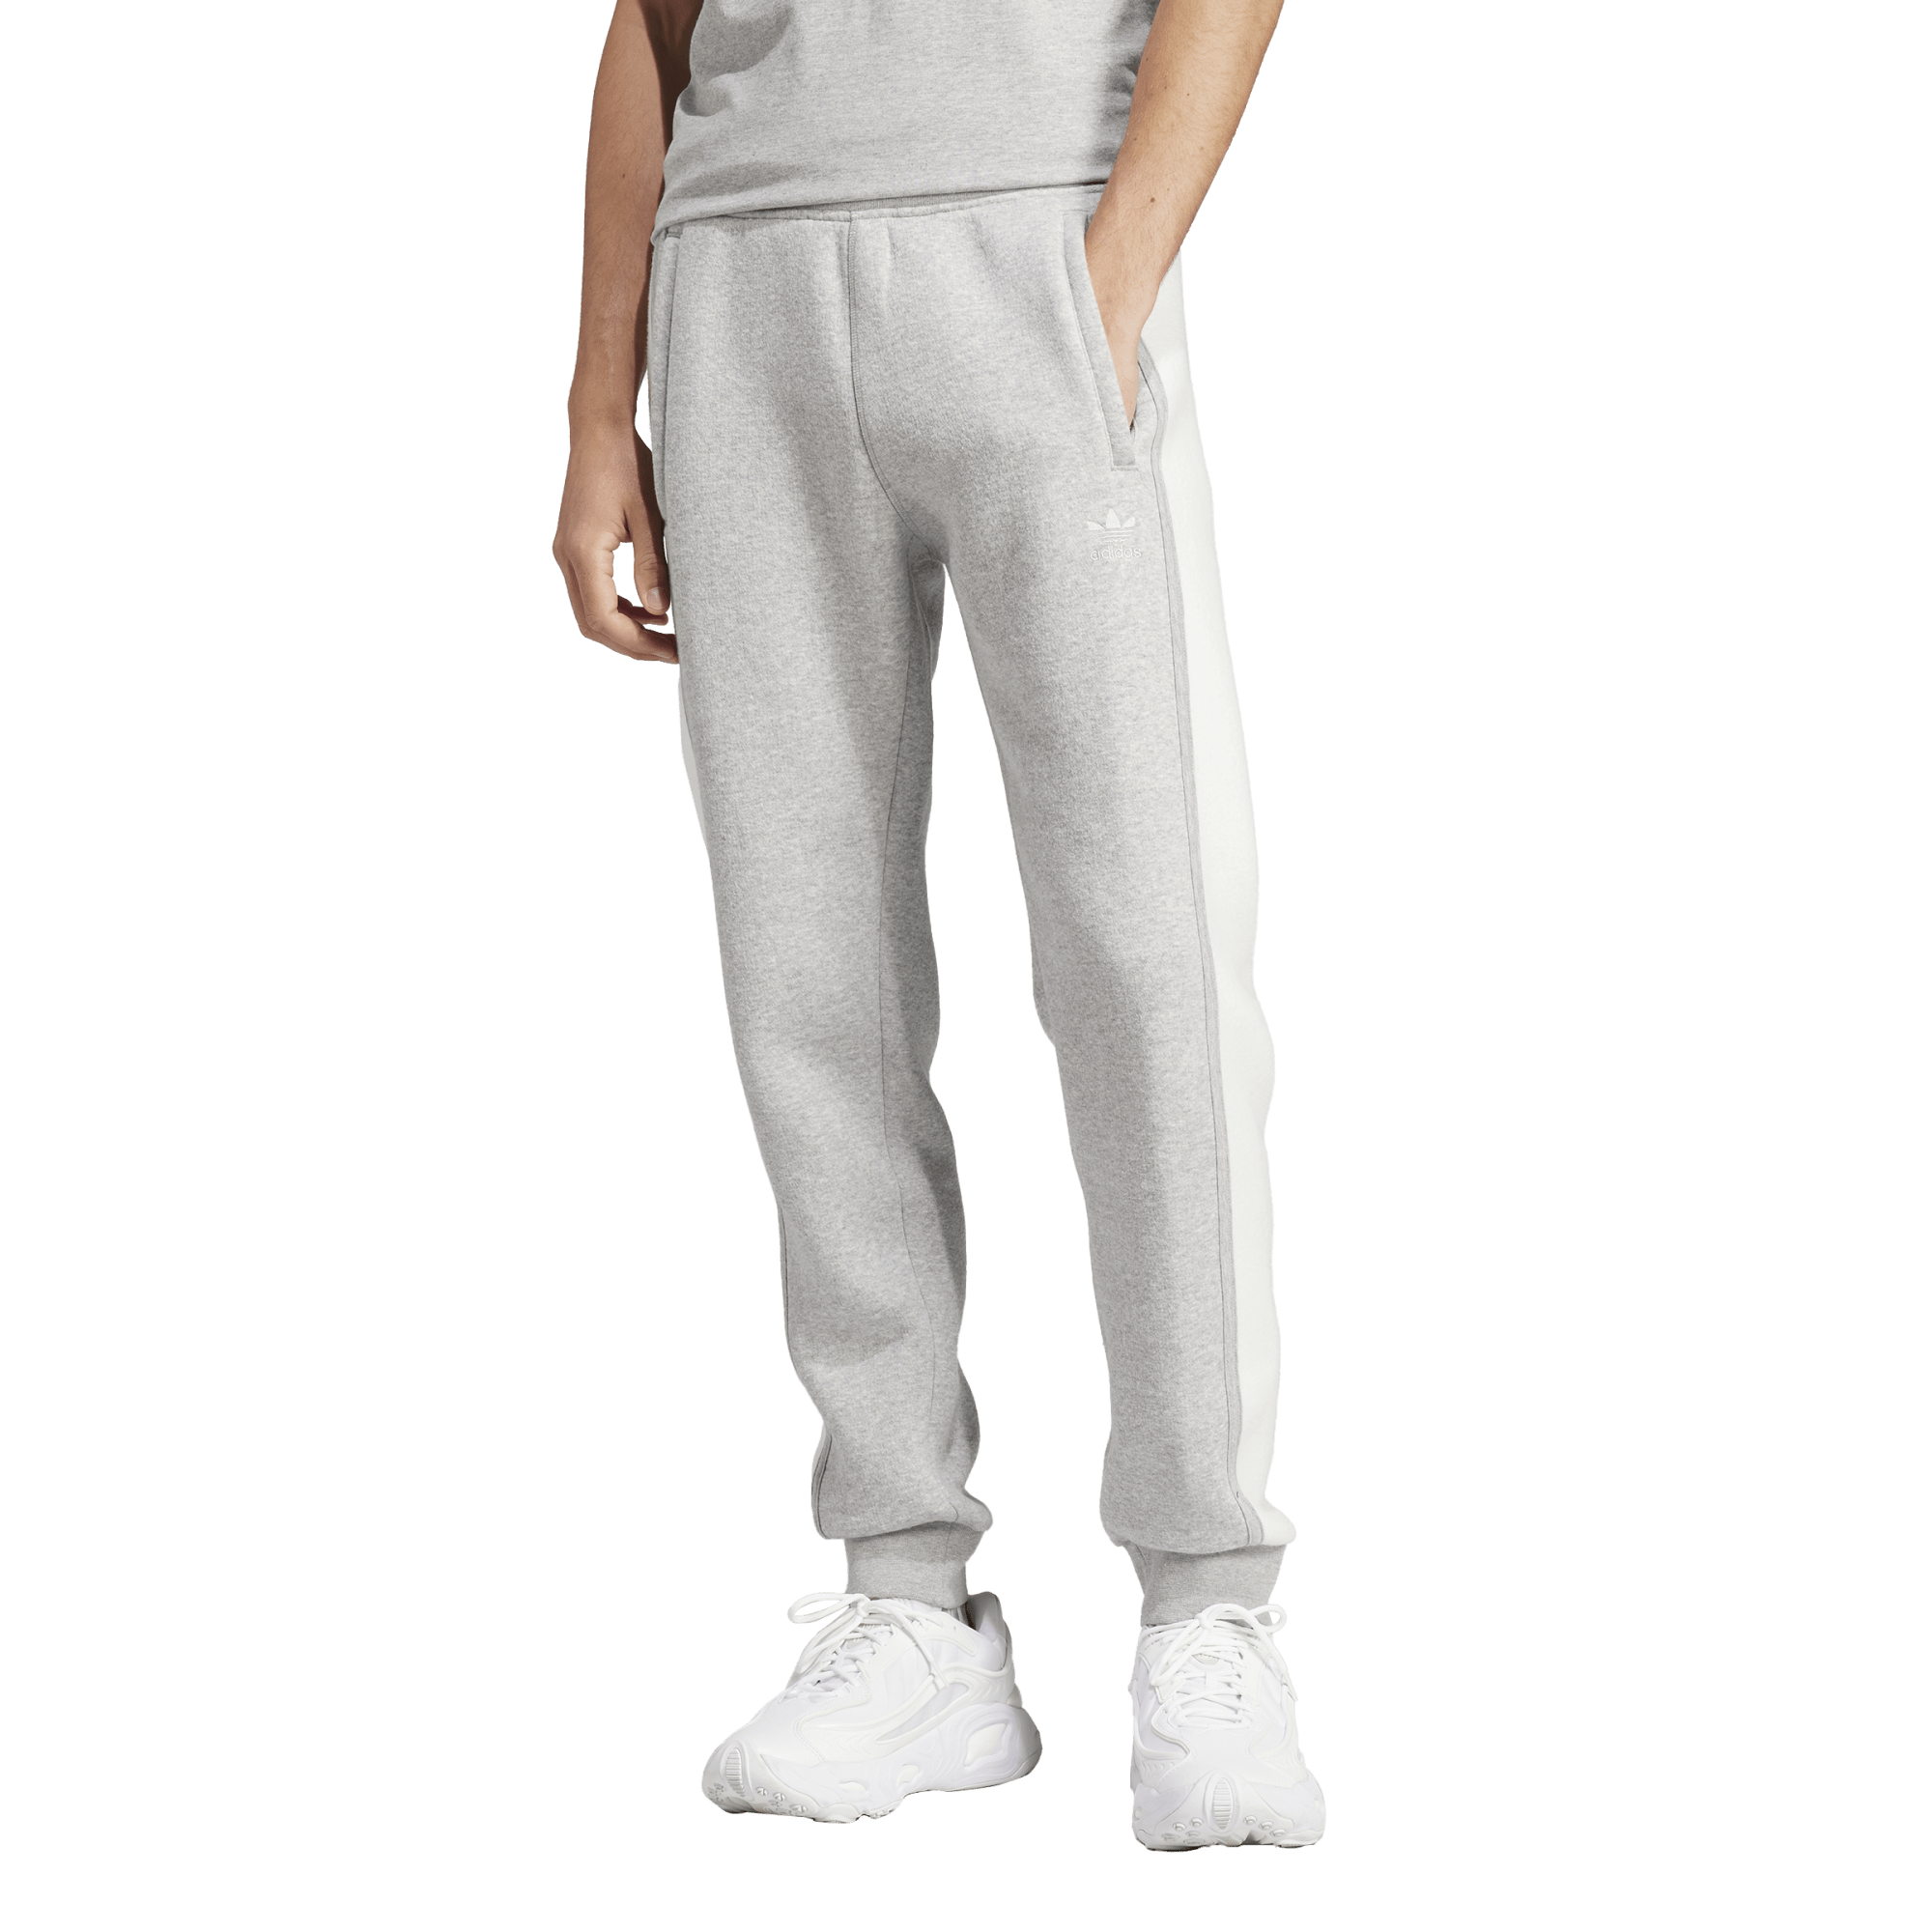 Adidas Premium Essential Woven Cargo Pants - Men's